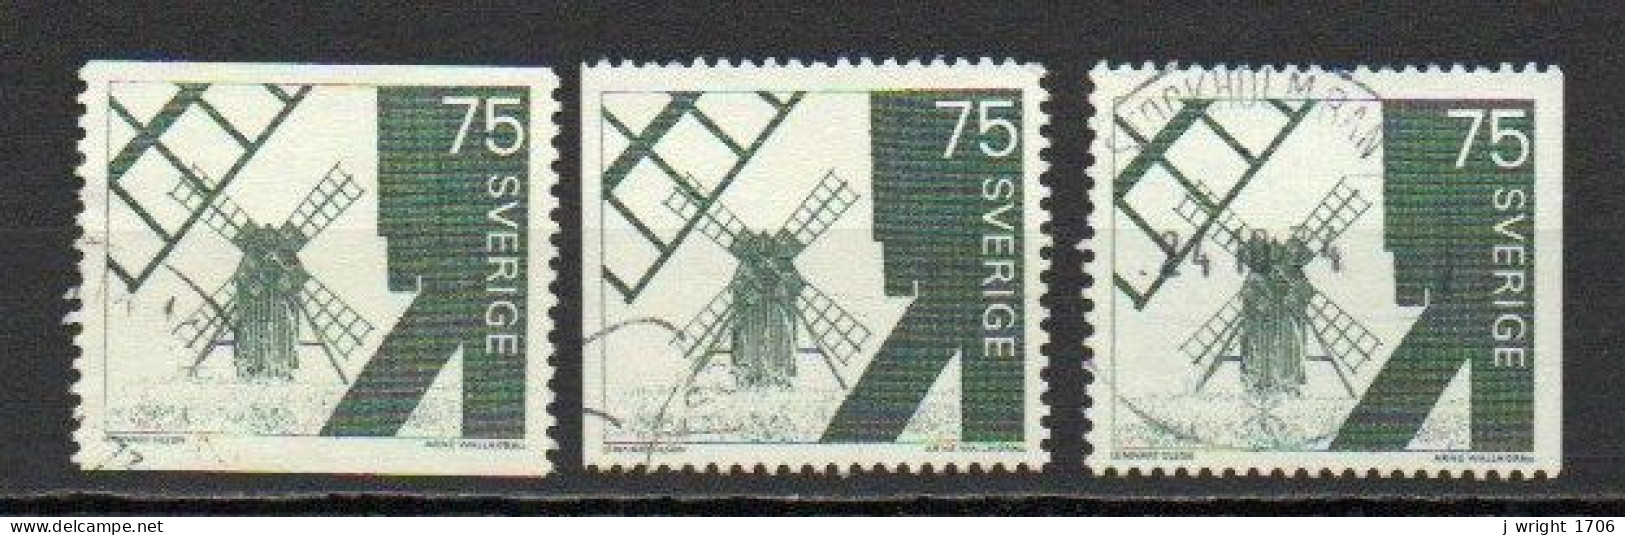 Sweden, 1971, Windmill Ölana Island, 75ö, USED - Used Stamps